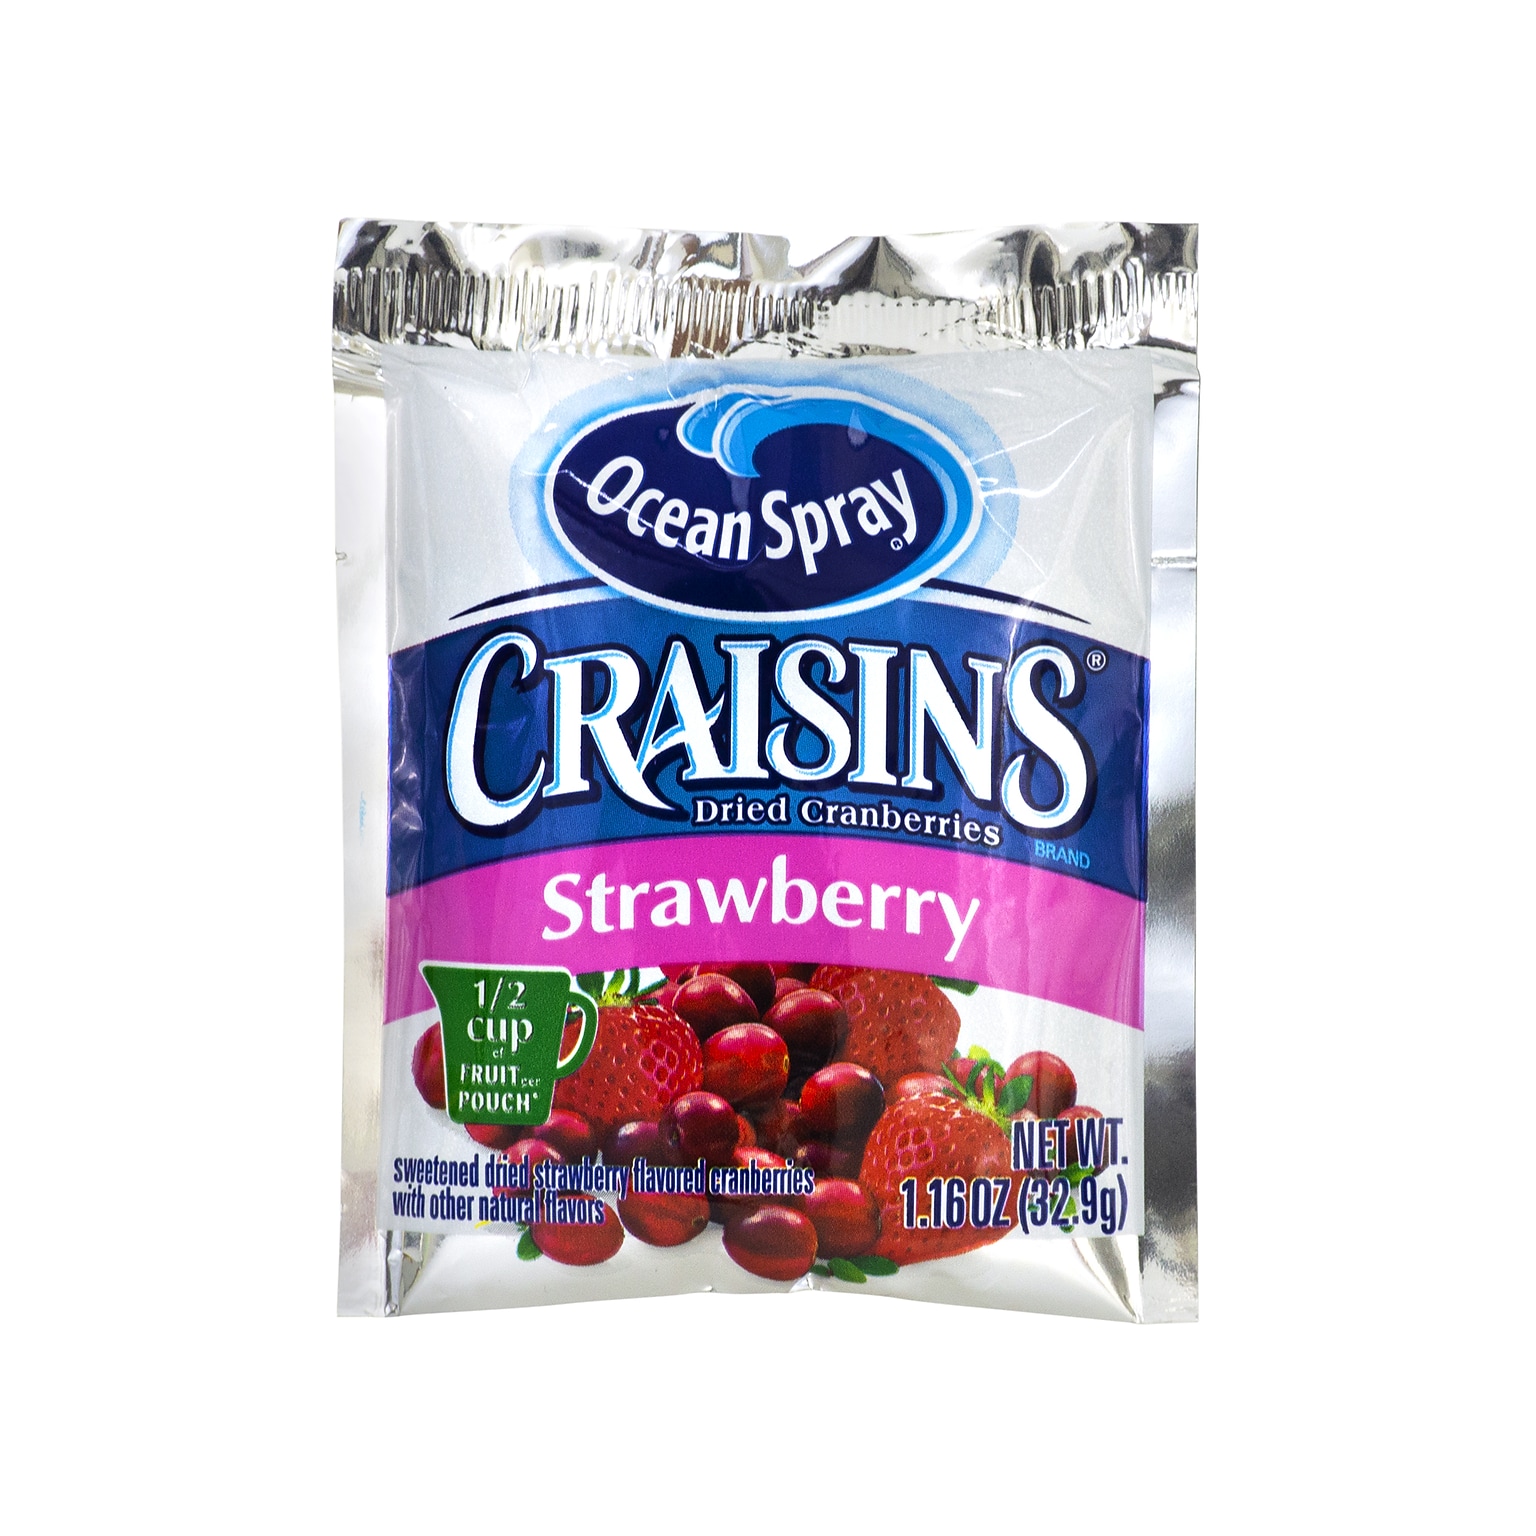 Ocean Spray Craisins Gluten Free Strawberry Dried Cranberries, 1.16 oz., 200/Pack (307-00076)